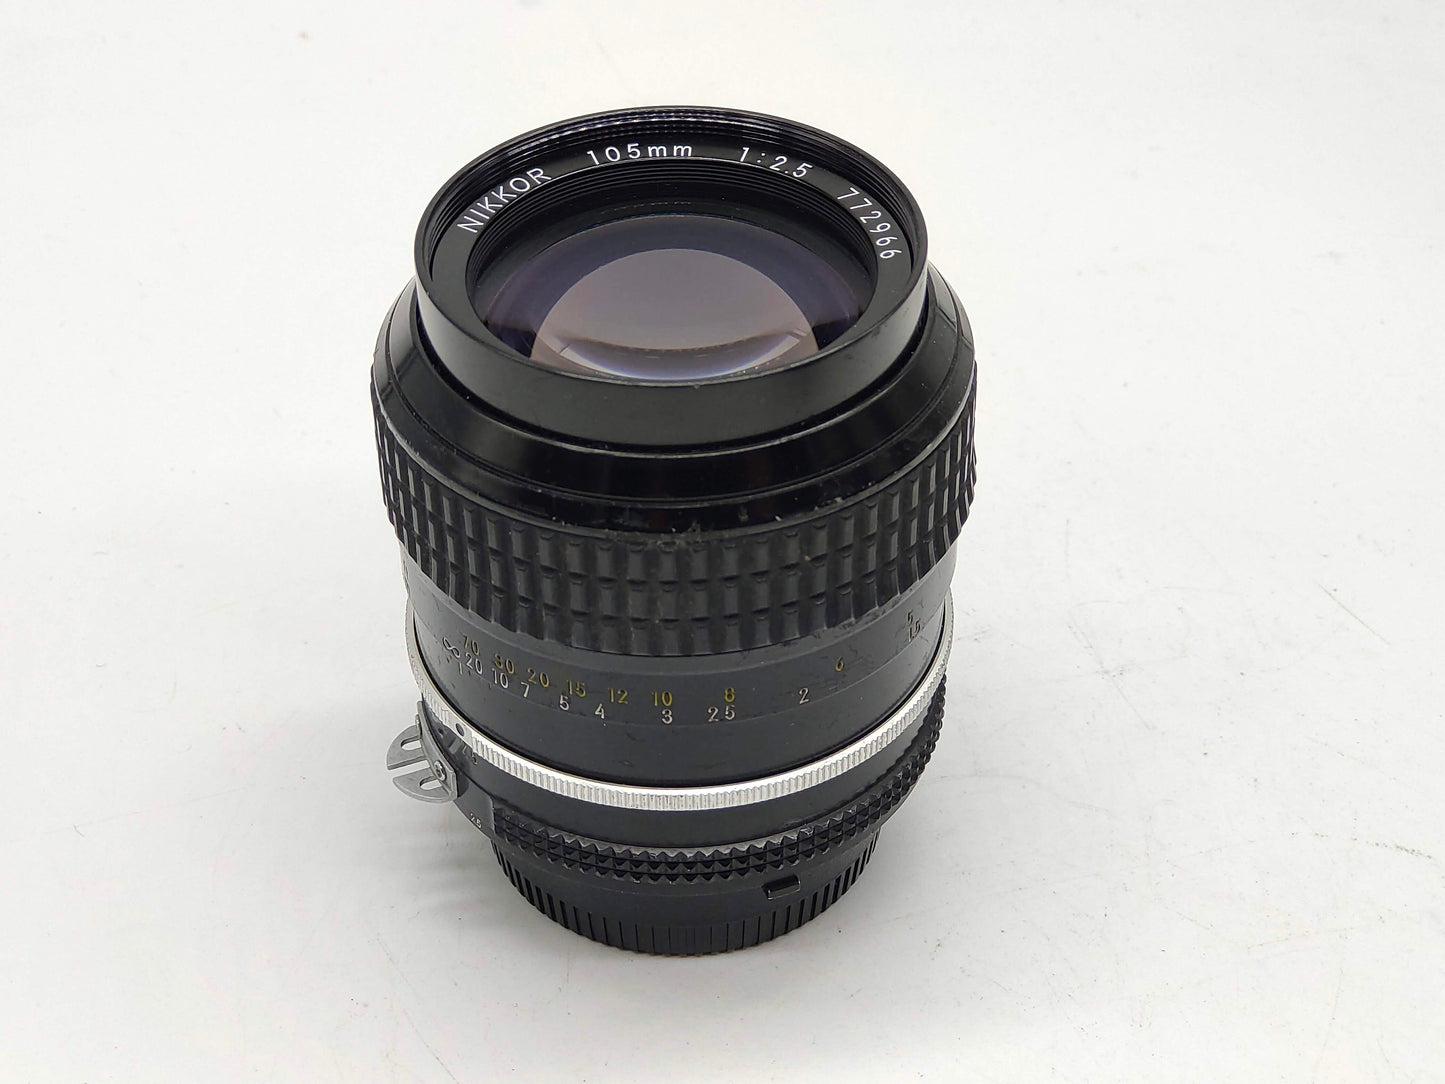 Nikon 105mm f/2.5 Nikkor AI lens